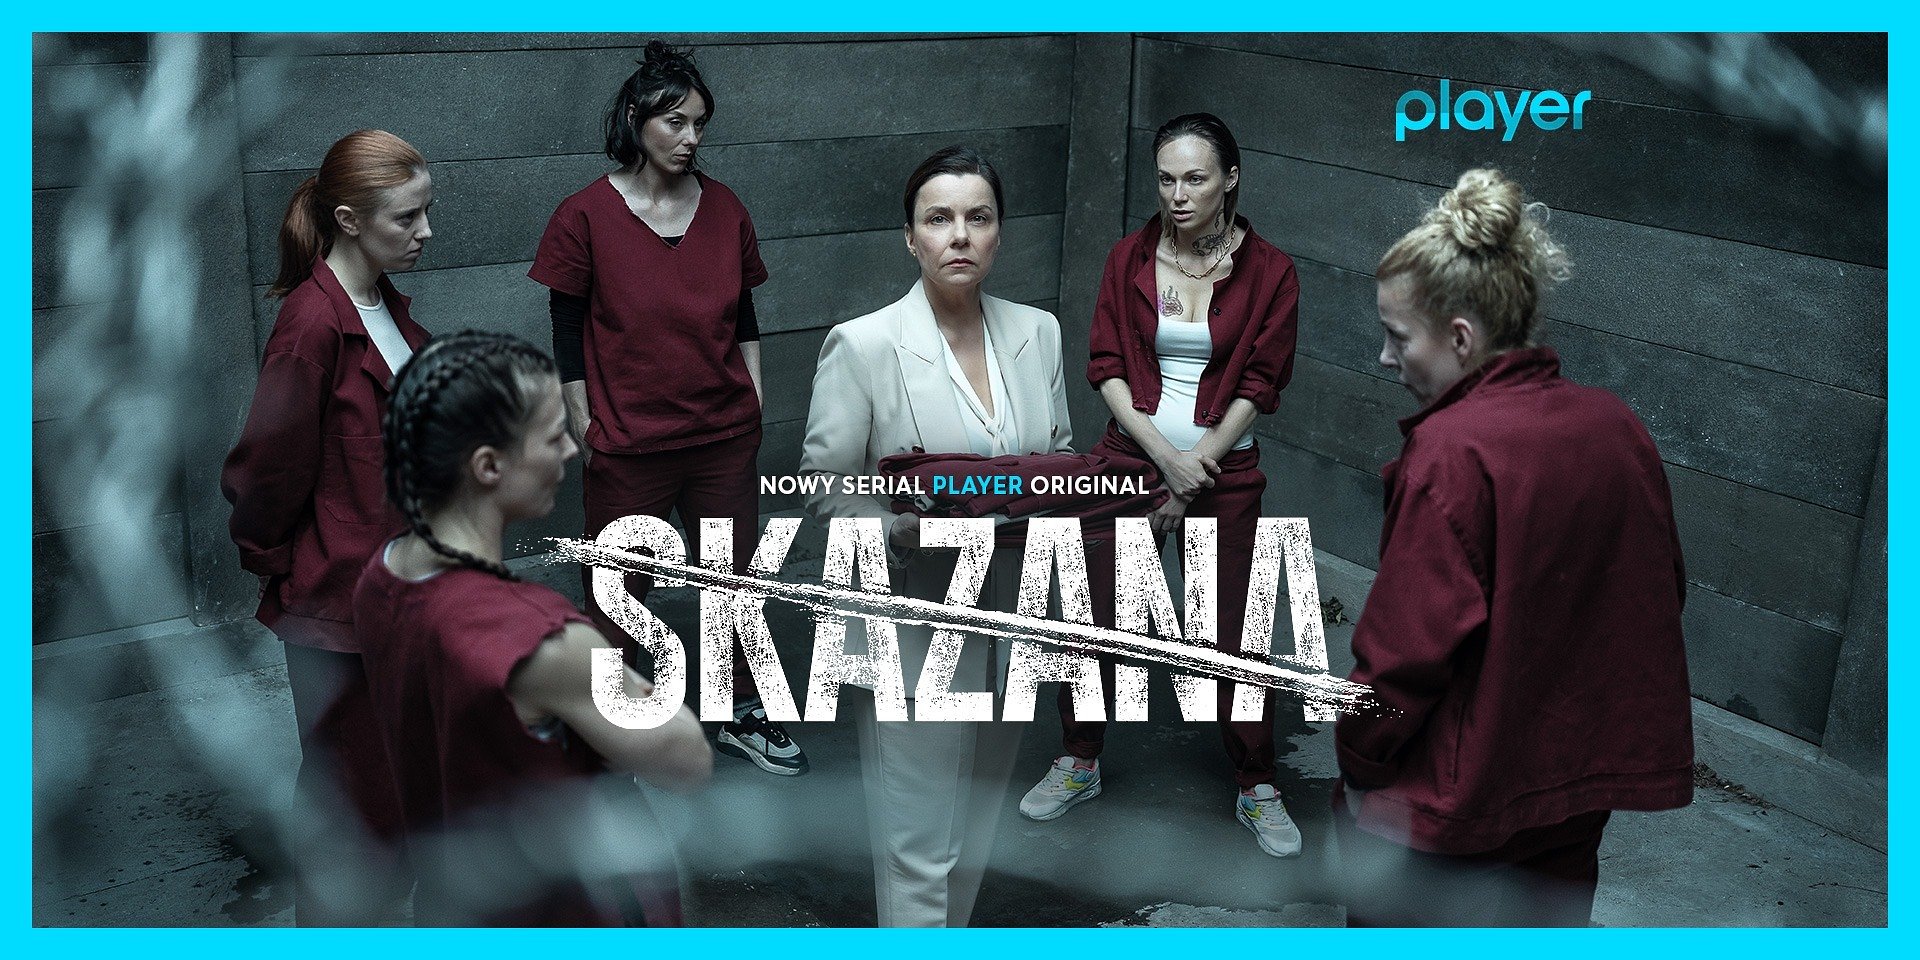 Poznajmy bohaterów nowego serialu “Skazana” – najnowszy hit jest już dostępny w Player!